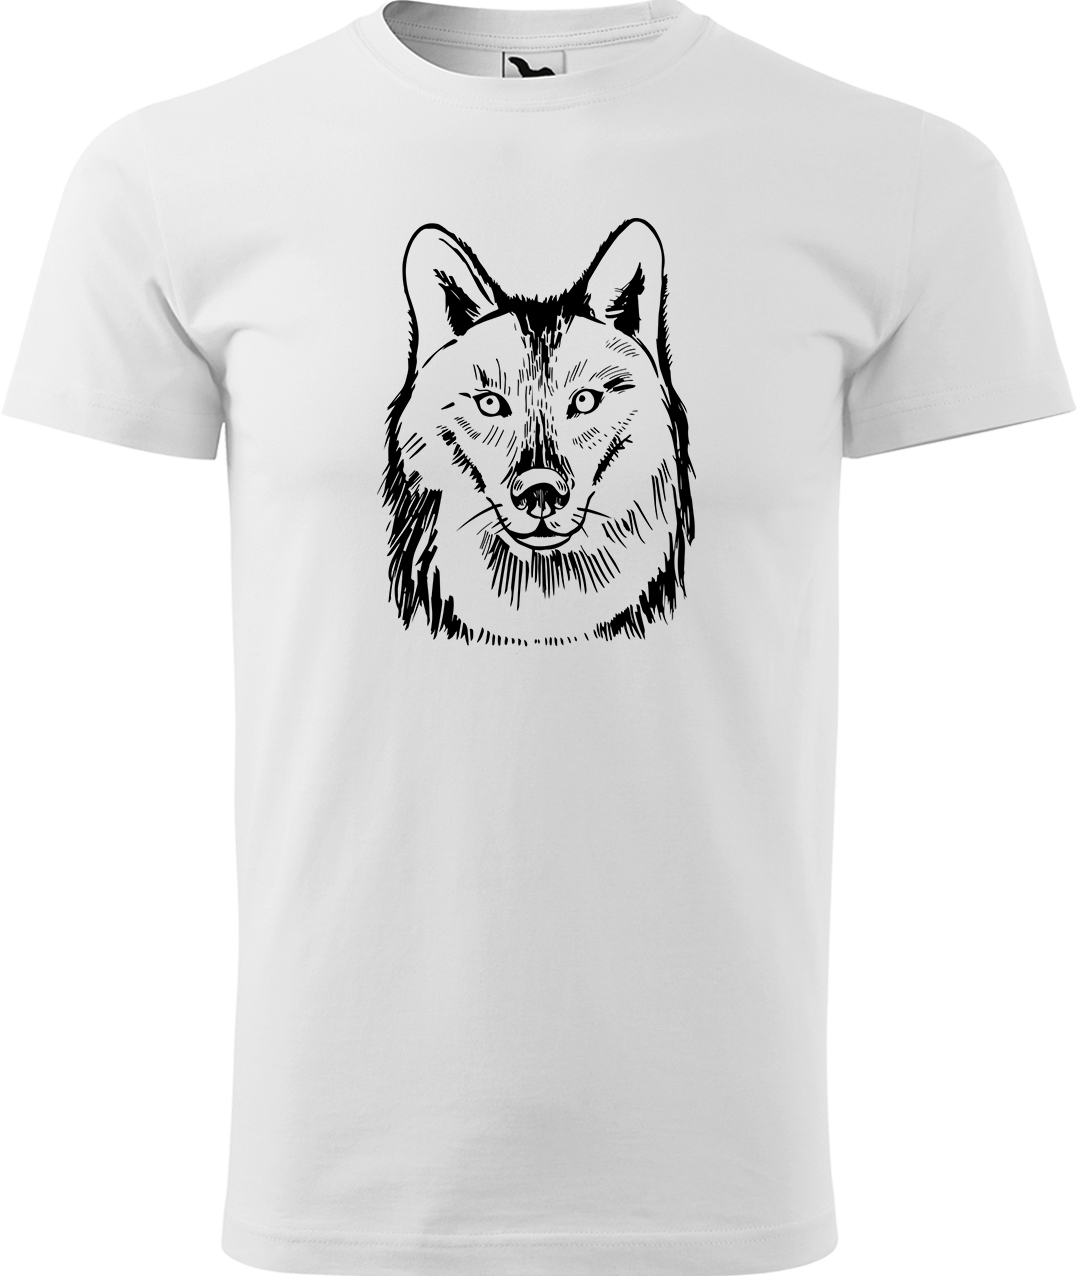 Pánské tričko s vlkem - Kresba vlka Velikost: S, Barva: Bílá (00), Střih: pánský